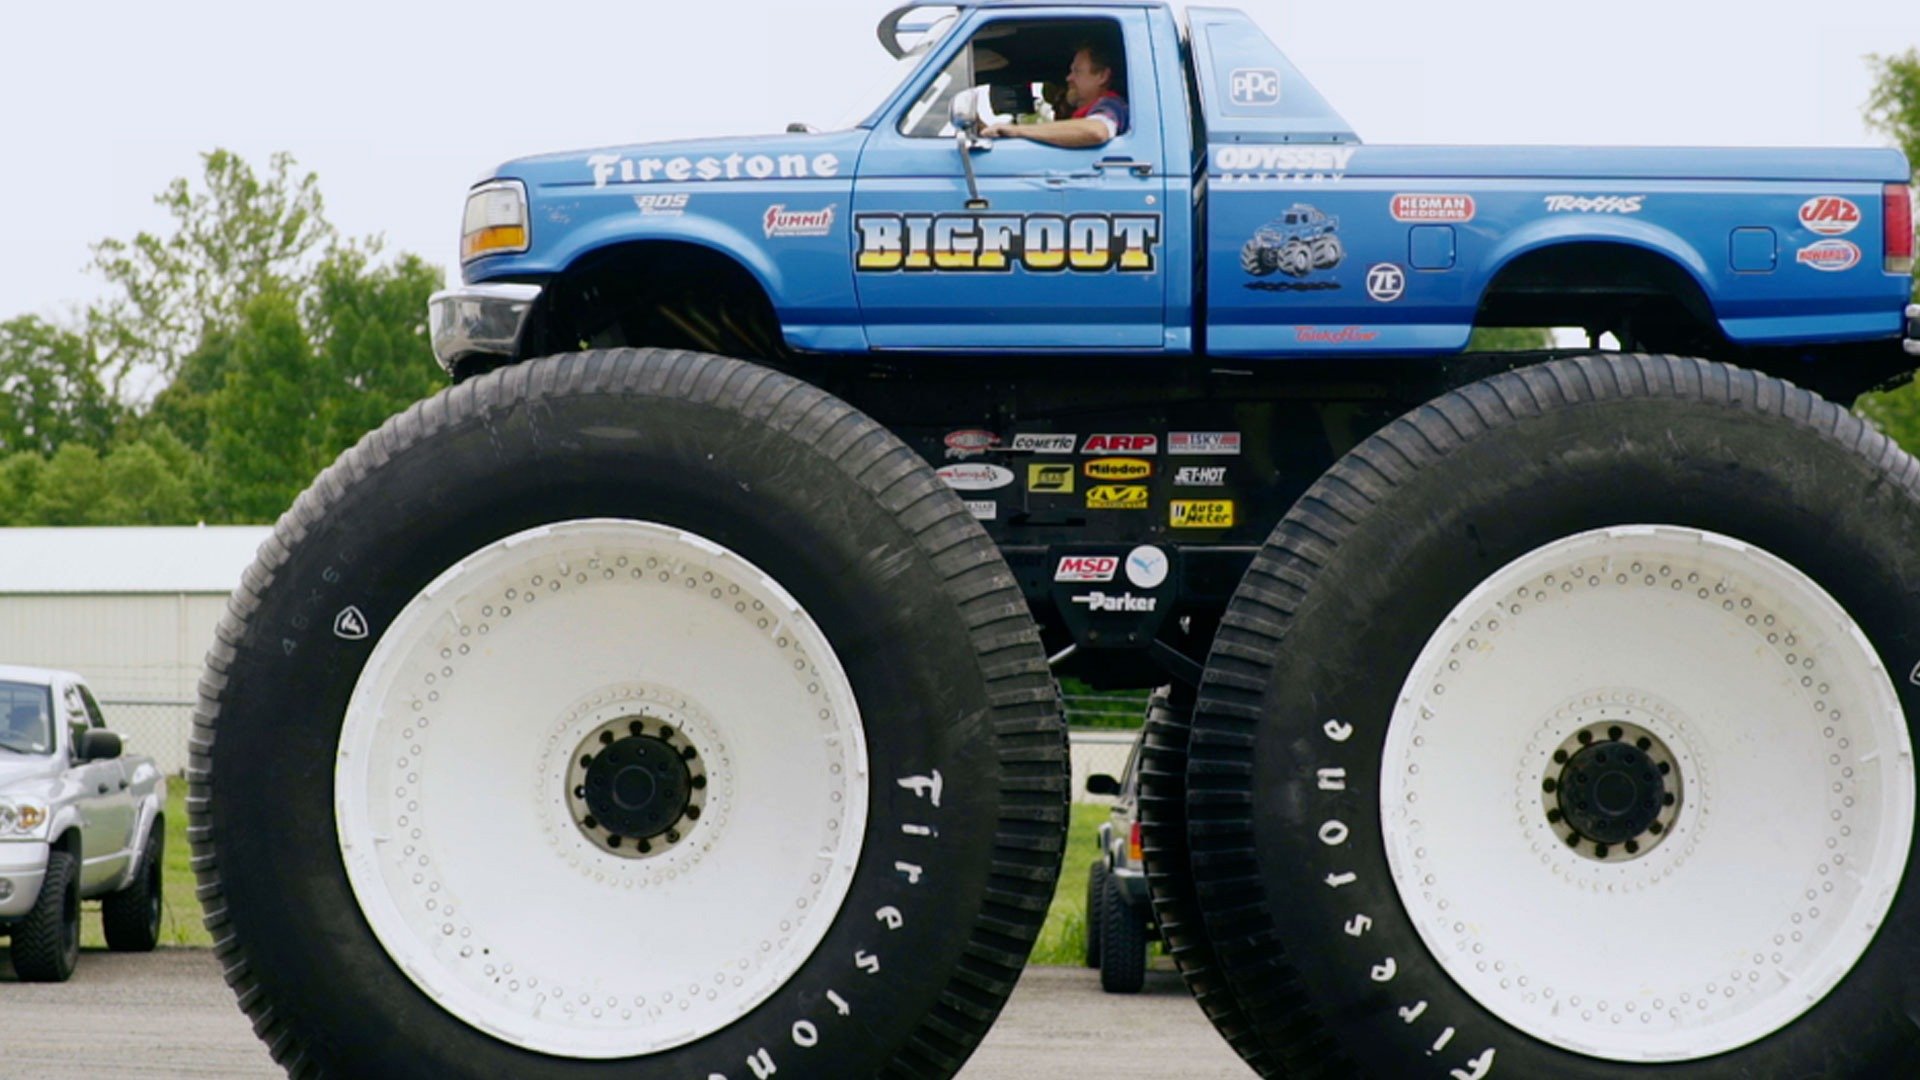 3. Ultimate Monster Trucks